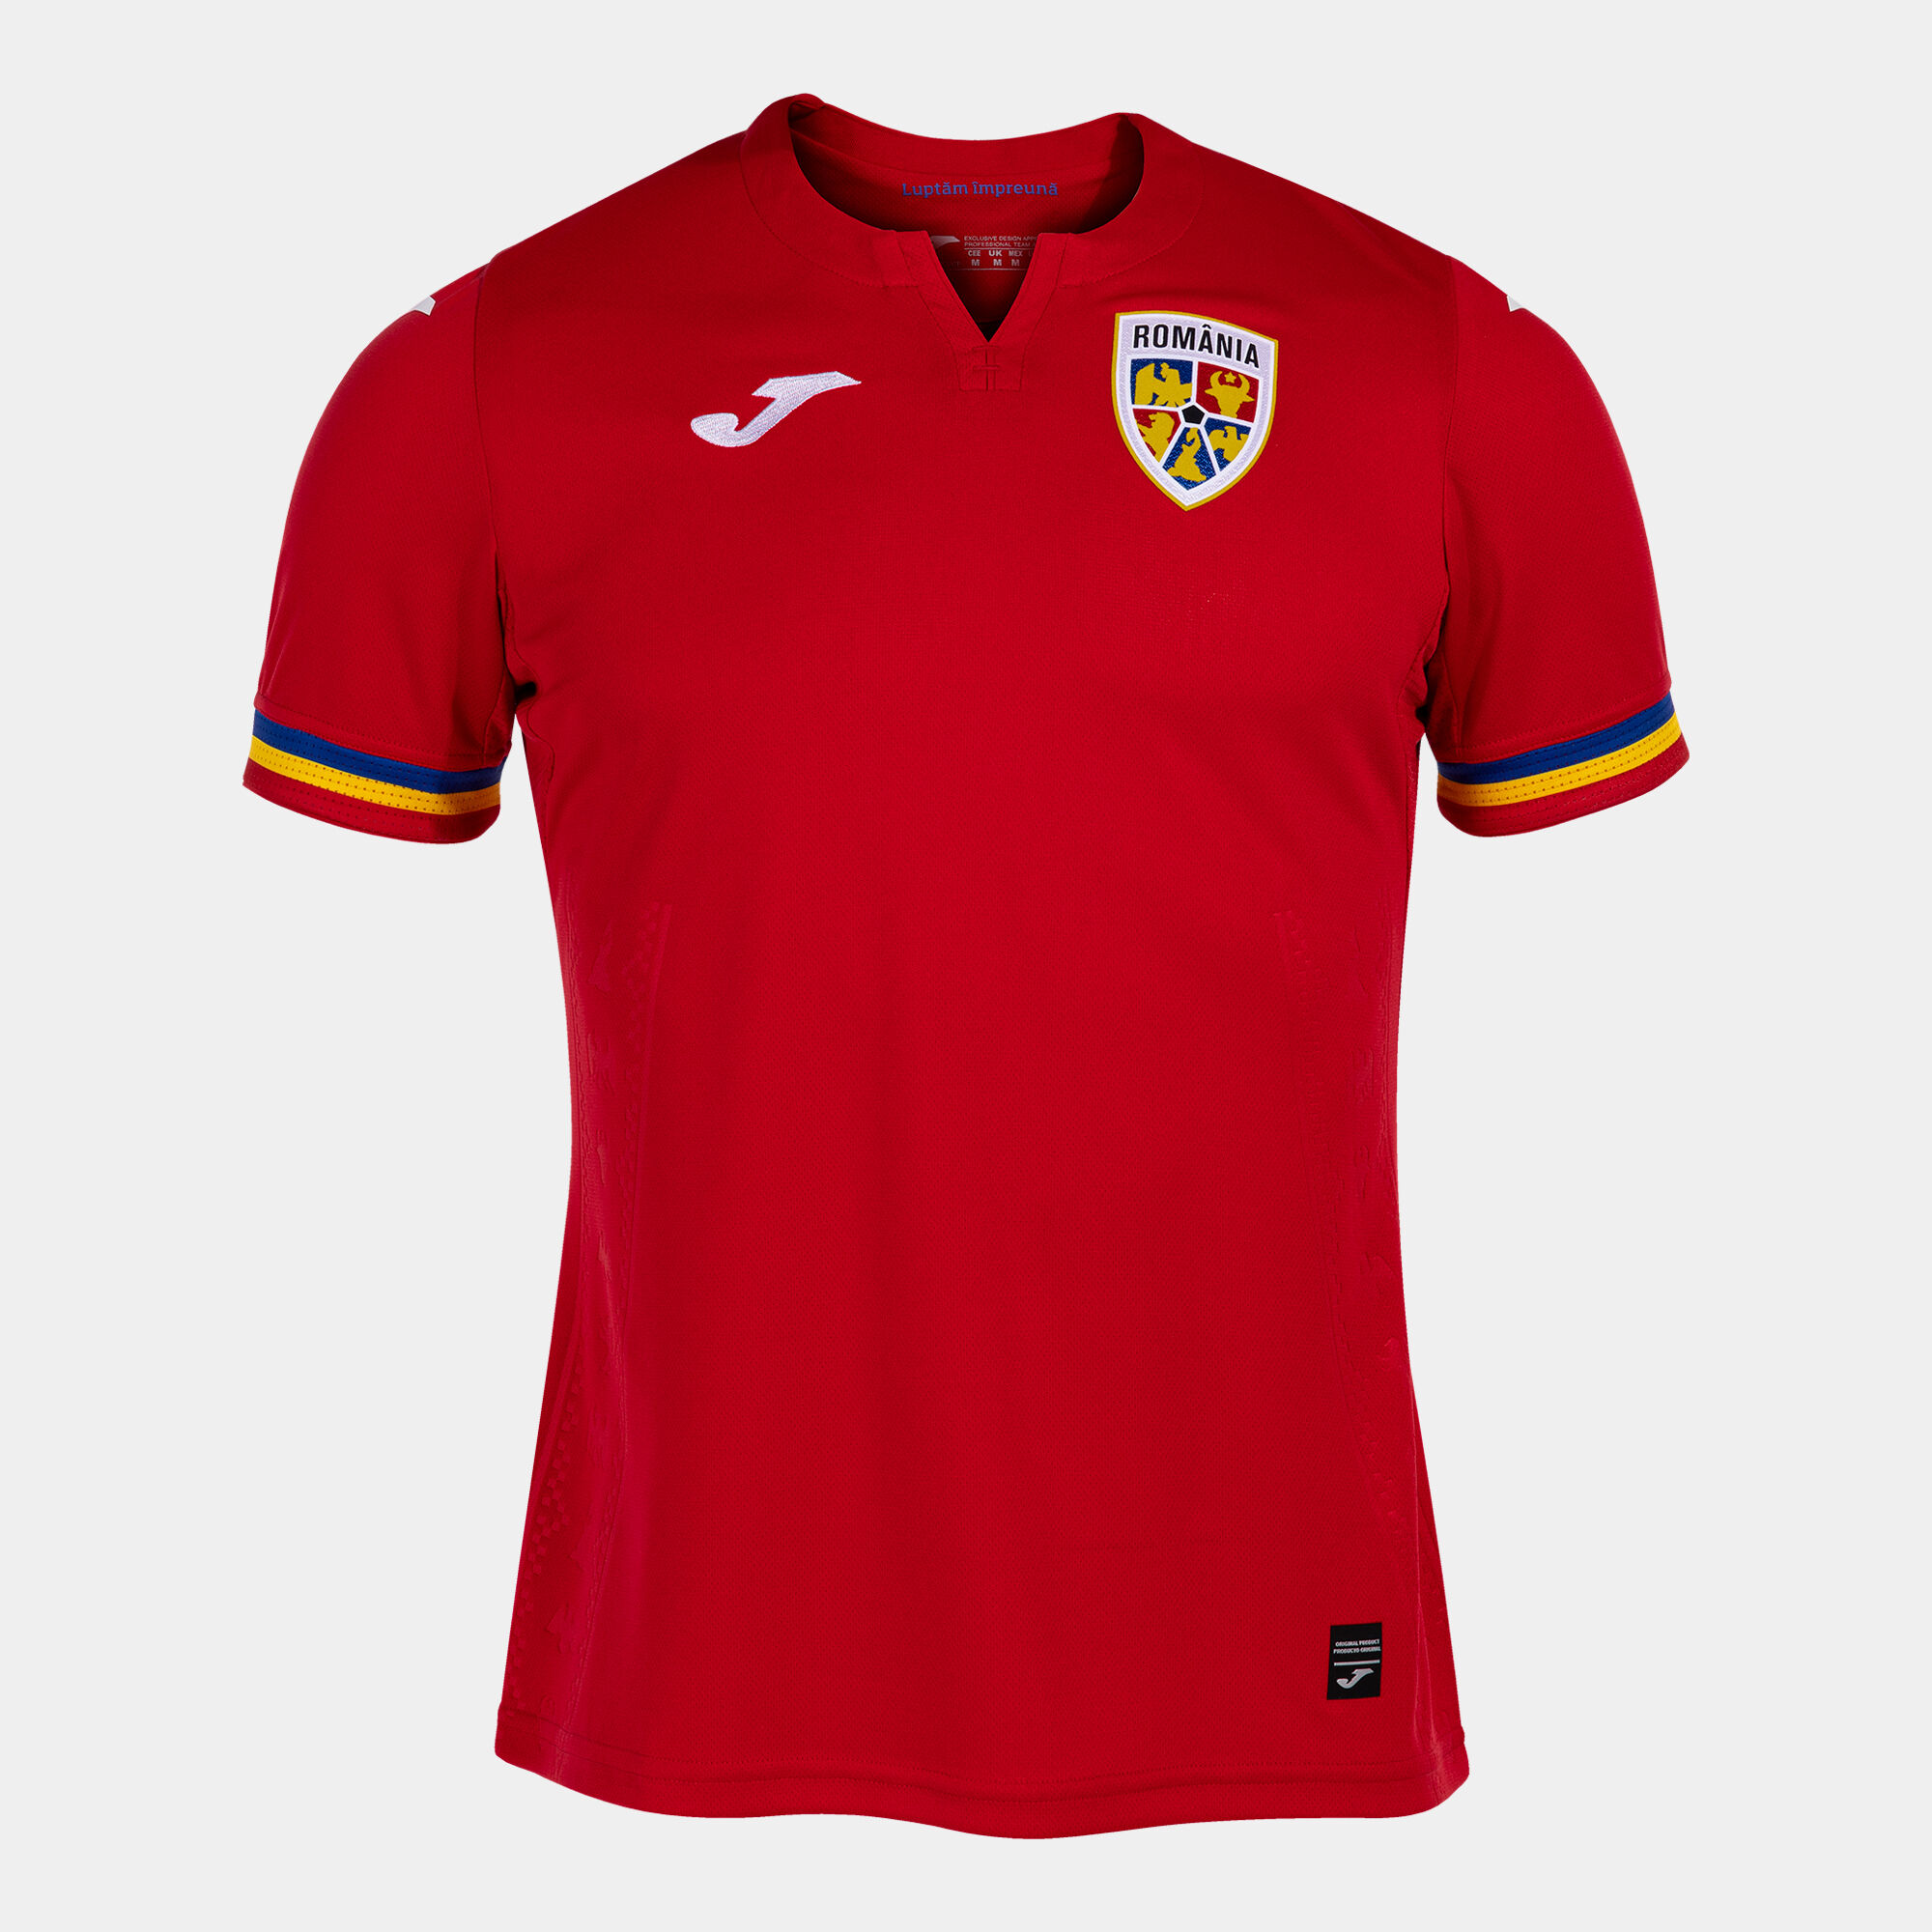 Koszulka z krótkim rękawem strój wyjazdowy Rumuńska Federacja Piłki Nożnej